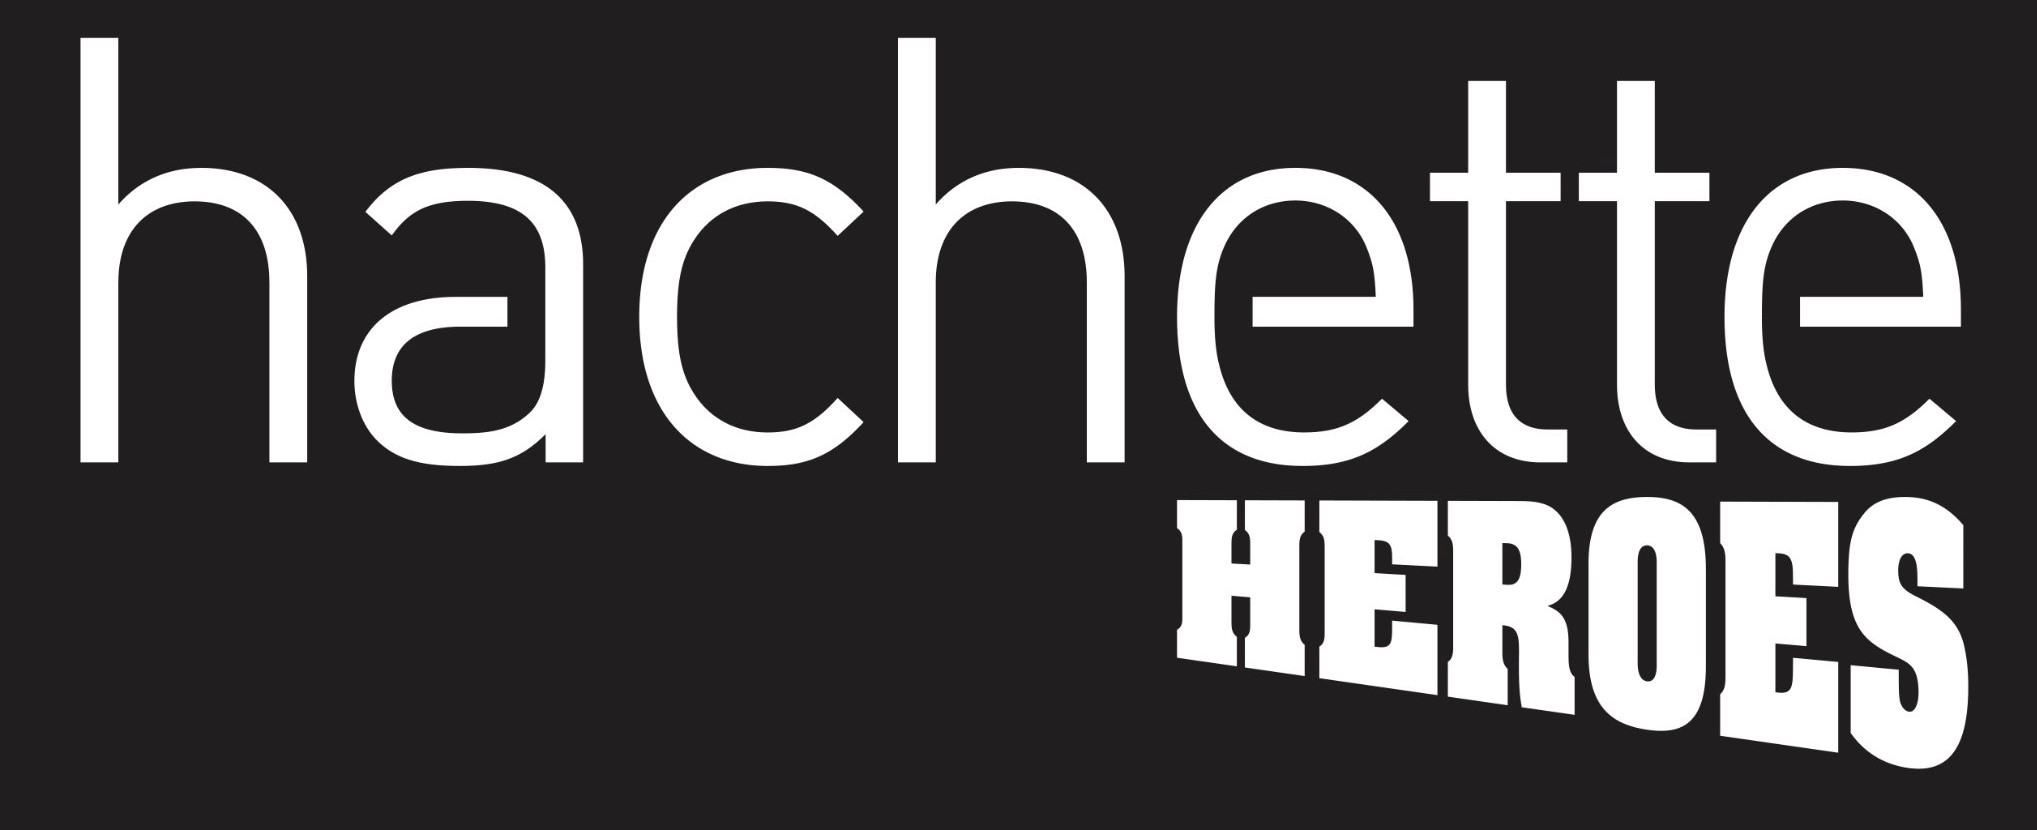 Logo Hachette Heroes